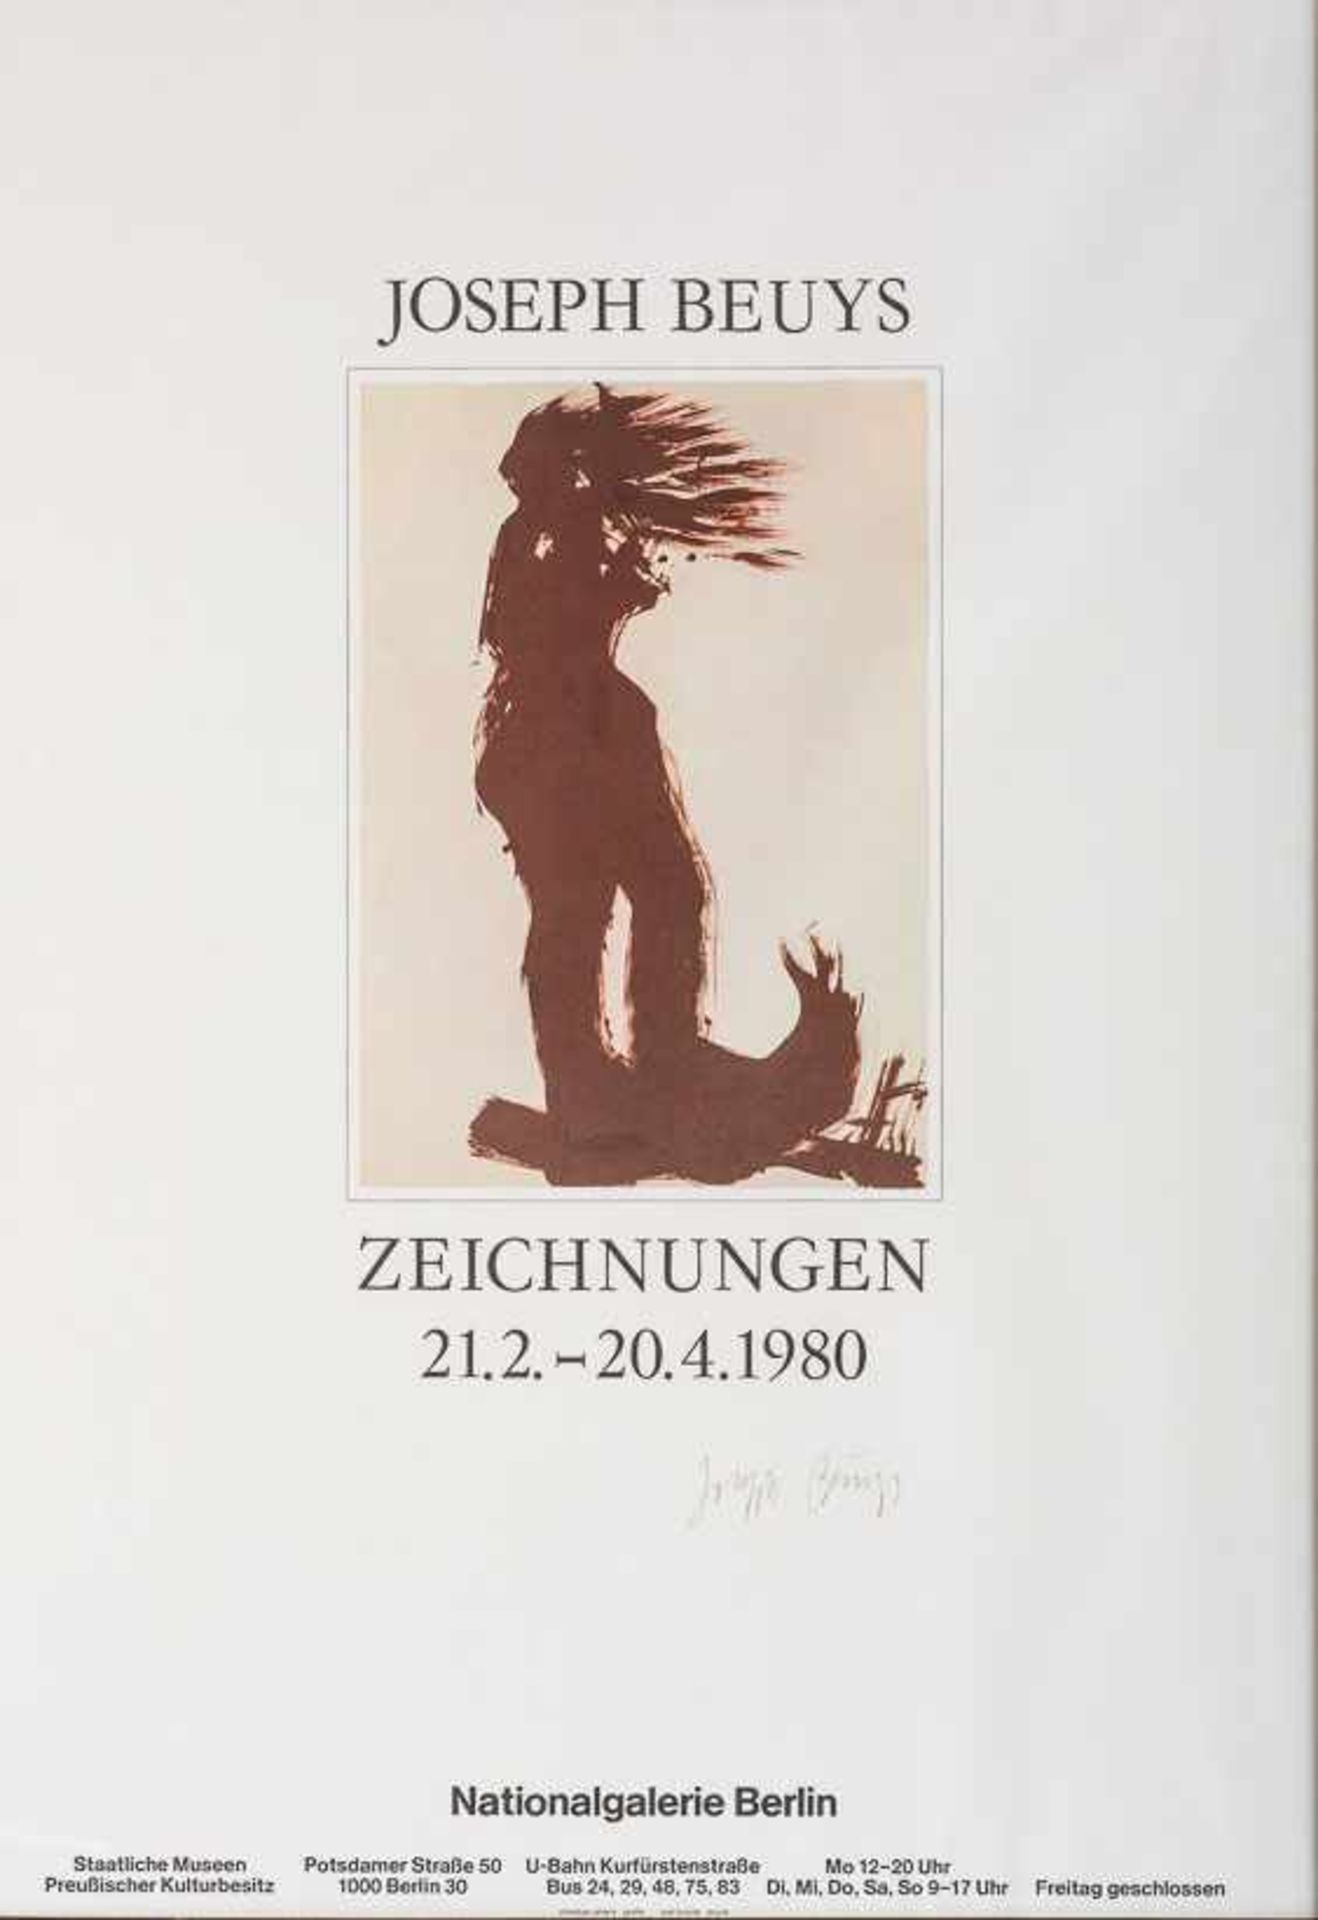 Beuys, Joseph (Krefeld, Düsseldorf 1921-1986) Ausstellungsplakat "Joseph Beuys", Zeichnungen, 21.